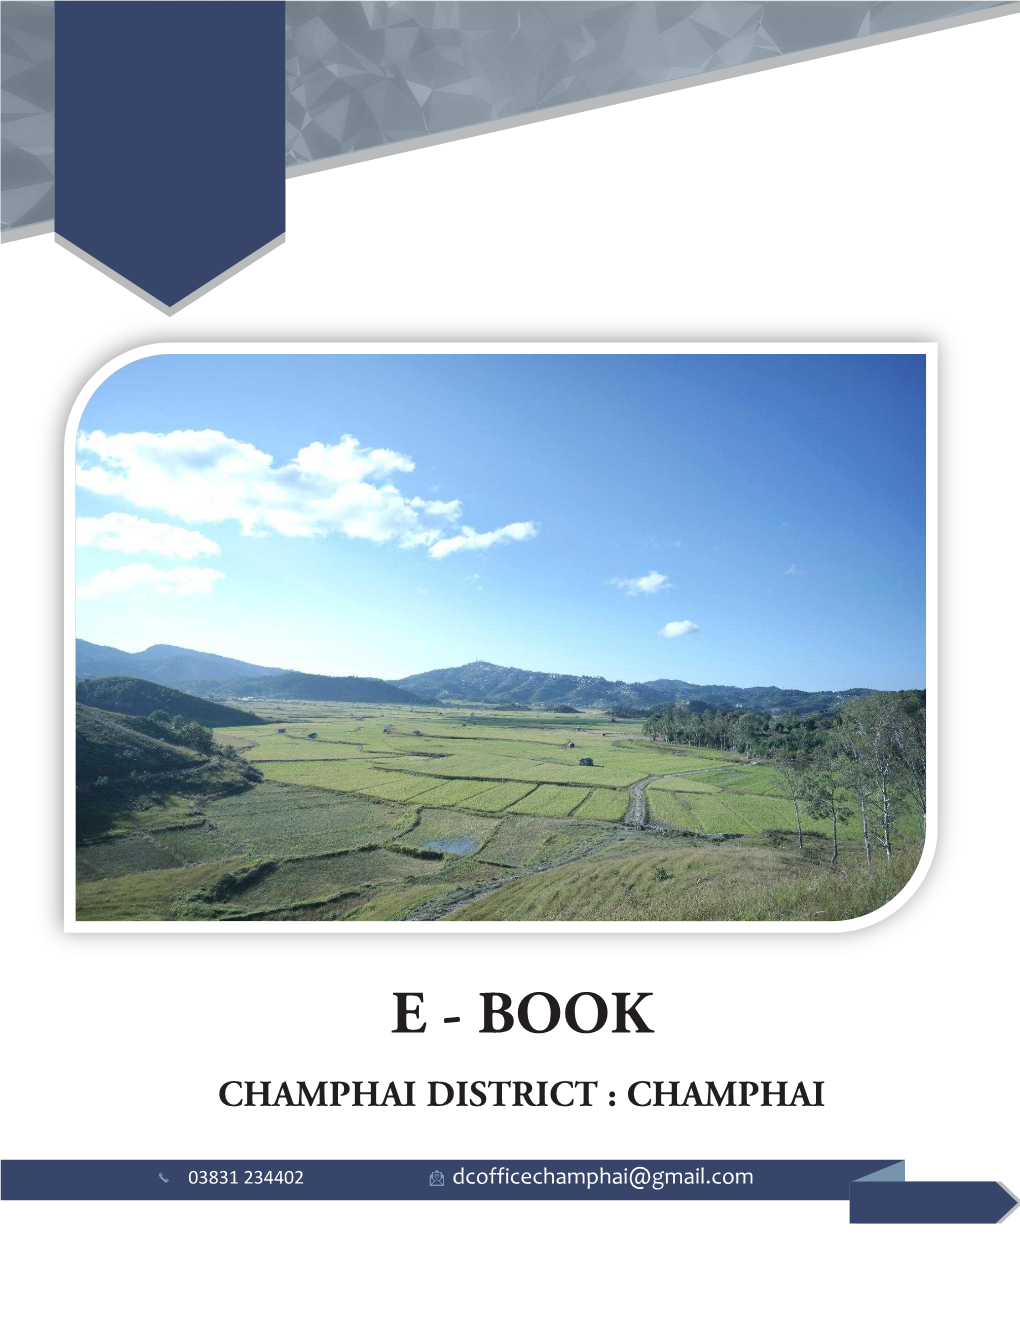 Champhai District : Champhai